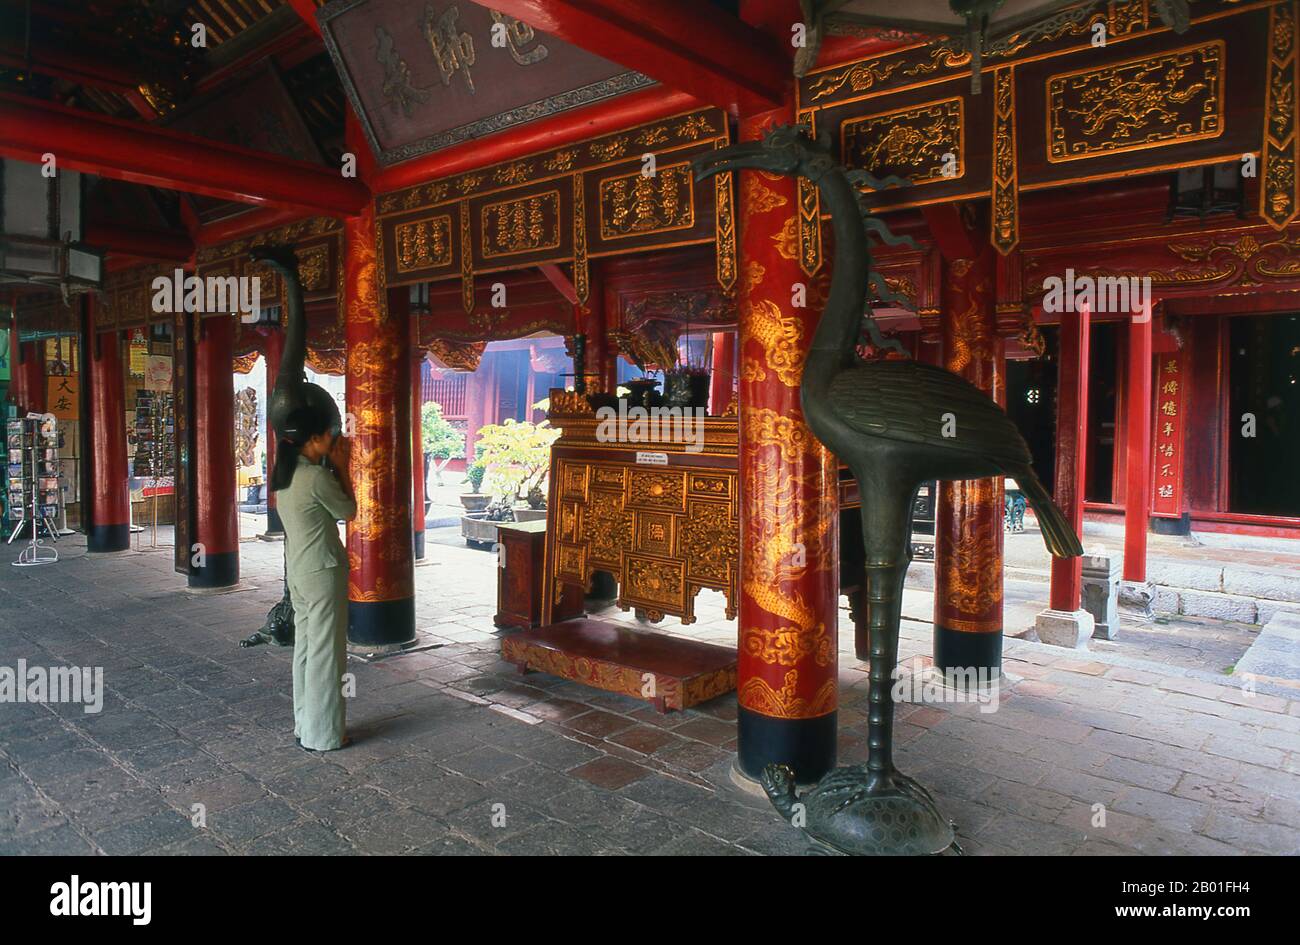 Vietnam: Verehrer am Hauptaltar, Altar des Konfuzius, großes Haus der Zeremonien, Tempel der Literatur (Van Mieu), Hanoi. Der Literaturtempel oder Van Mieu ist einer der bedeutendsten kulturellen Schätze Vietnams. Der Tempel wurde 1070 von König Ly Thanh Tong aus der frühen Ly-Dynastie gegründet und war ursprünglich Konfuzius und Chu Cong gewidmet, einem Mitglied der chinesischen Königsfamilie, dem viele der Lehren, die Konfuzius fünfhundert Jahre später entwickelte, zugeschrieben wurden. Die Stätte wurde von Geomancern der Ly-Dynastie ausgewählt, um im Einklang mit dem taoistischen Bich Cau Tempel zu stehen. Stockfoto